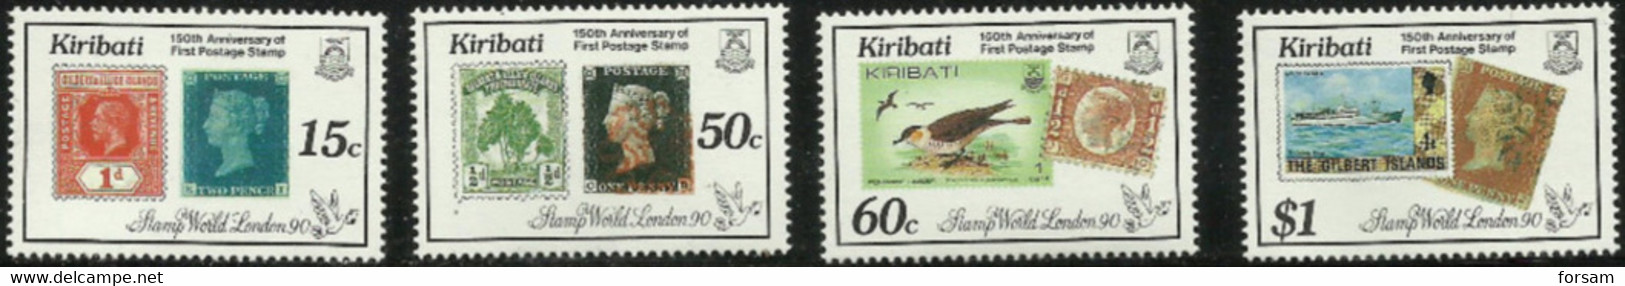 KIRIBATI..1990..Michel # 540-543...MNH...MiCV - 12 Euro. - Kiribati (1979-...)